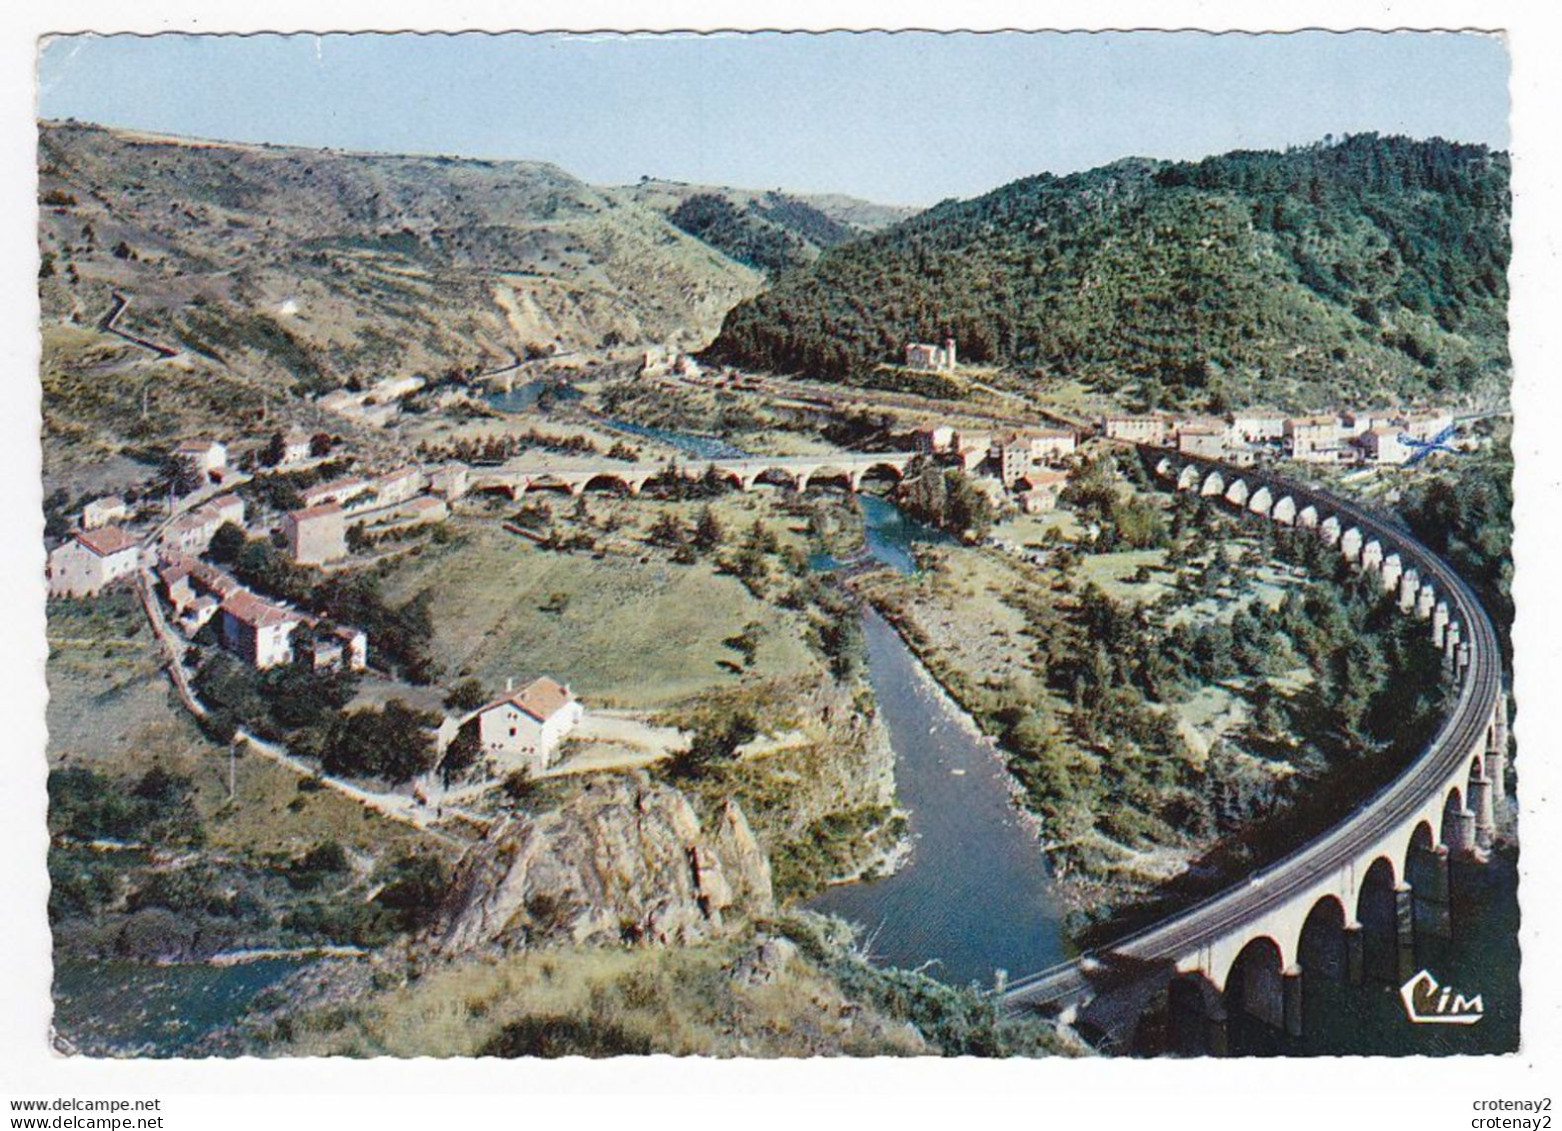 48 CHAPEAUROUX Vers Grandrieu N°409 Confluent Avec L'Allier Pont Viaduc Voie Ferrée Et Nouveau Monde En 1969 - Gandrieux Saint Amans